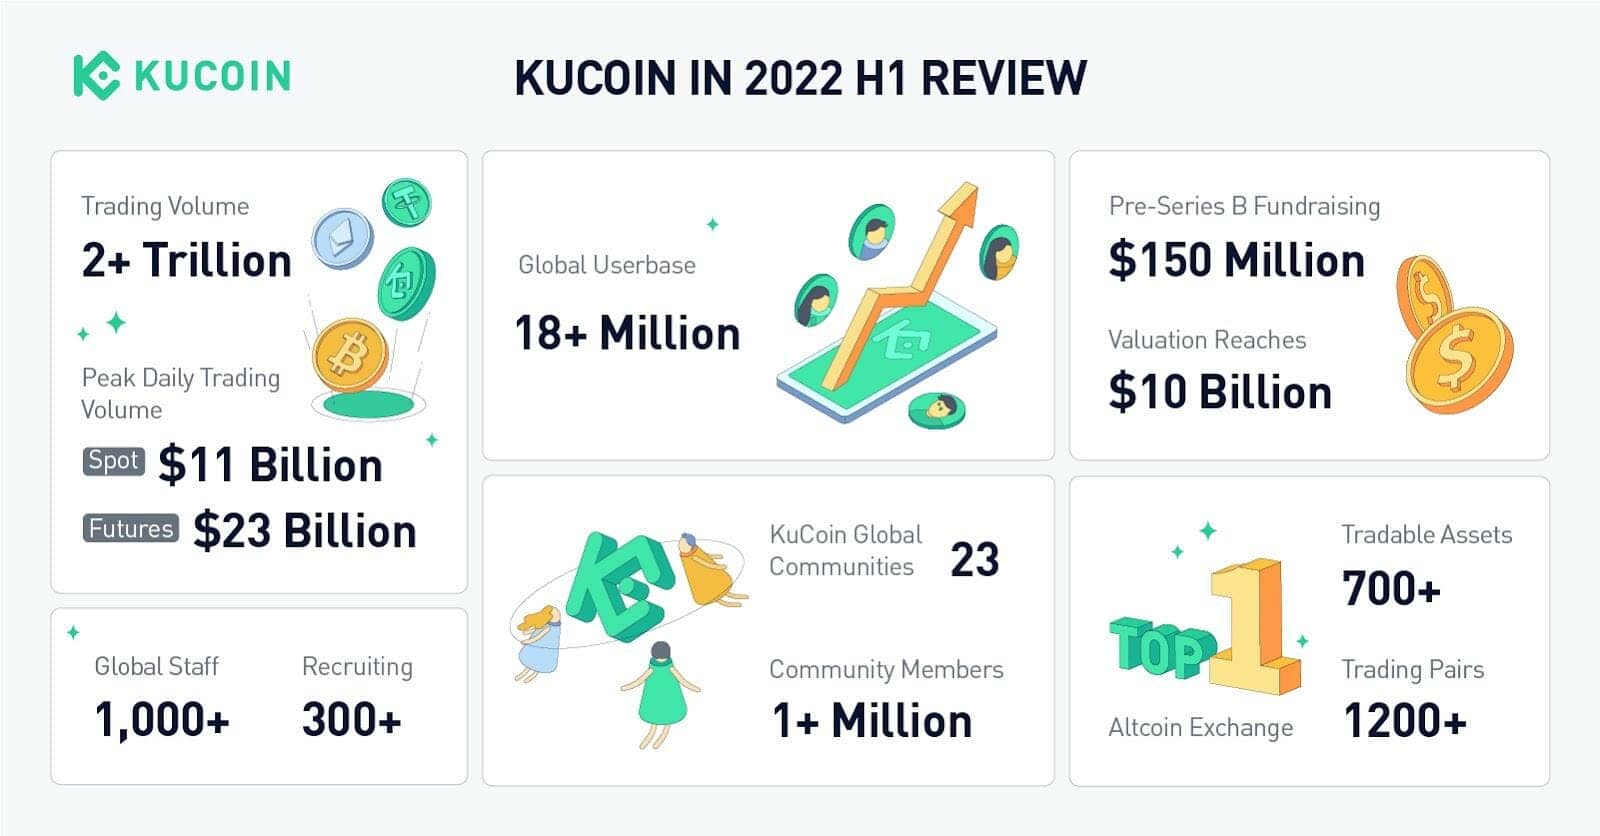 KuCoin affiche une belle santé malgré la tendance baissière qui frappe le marché crypto dans son ensemble